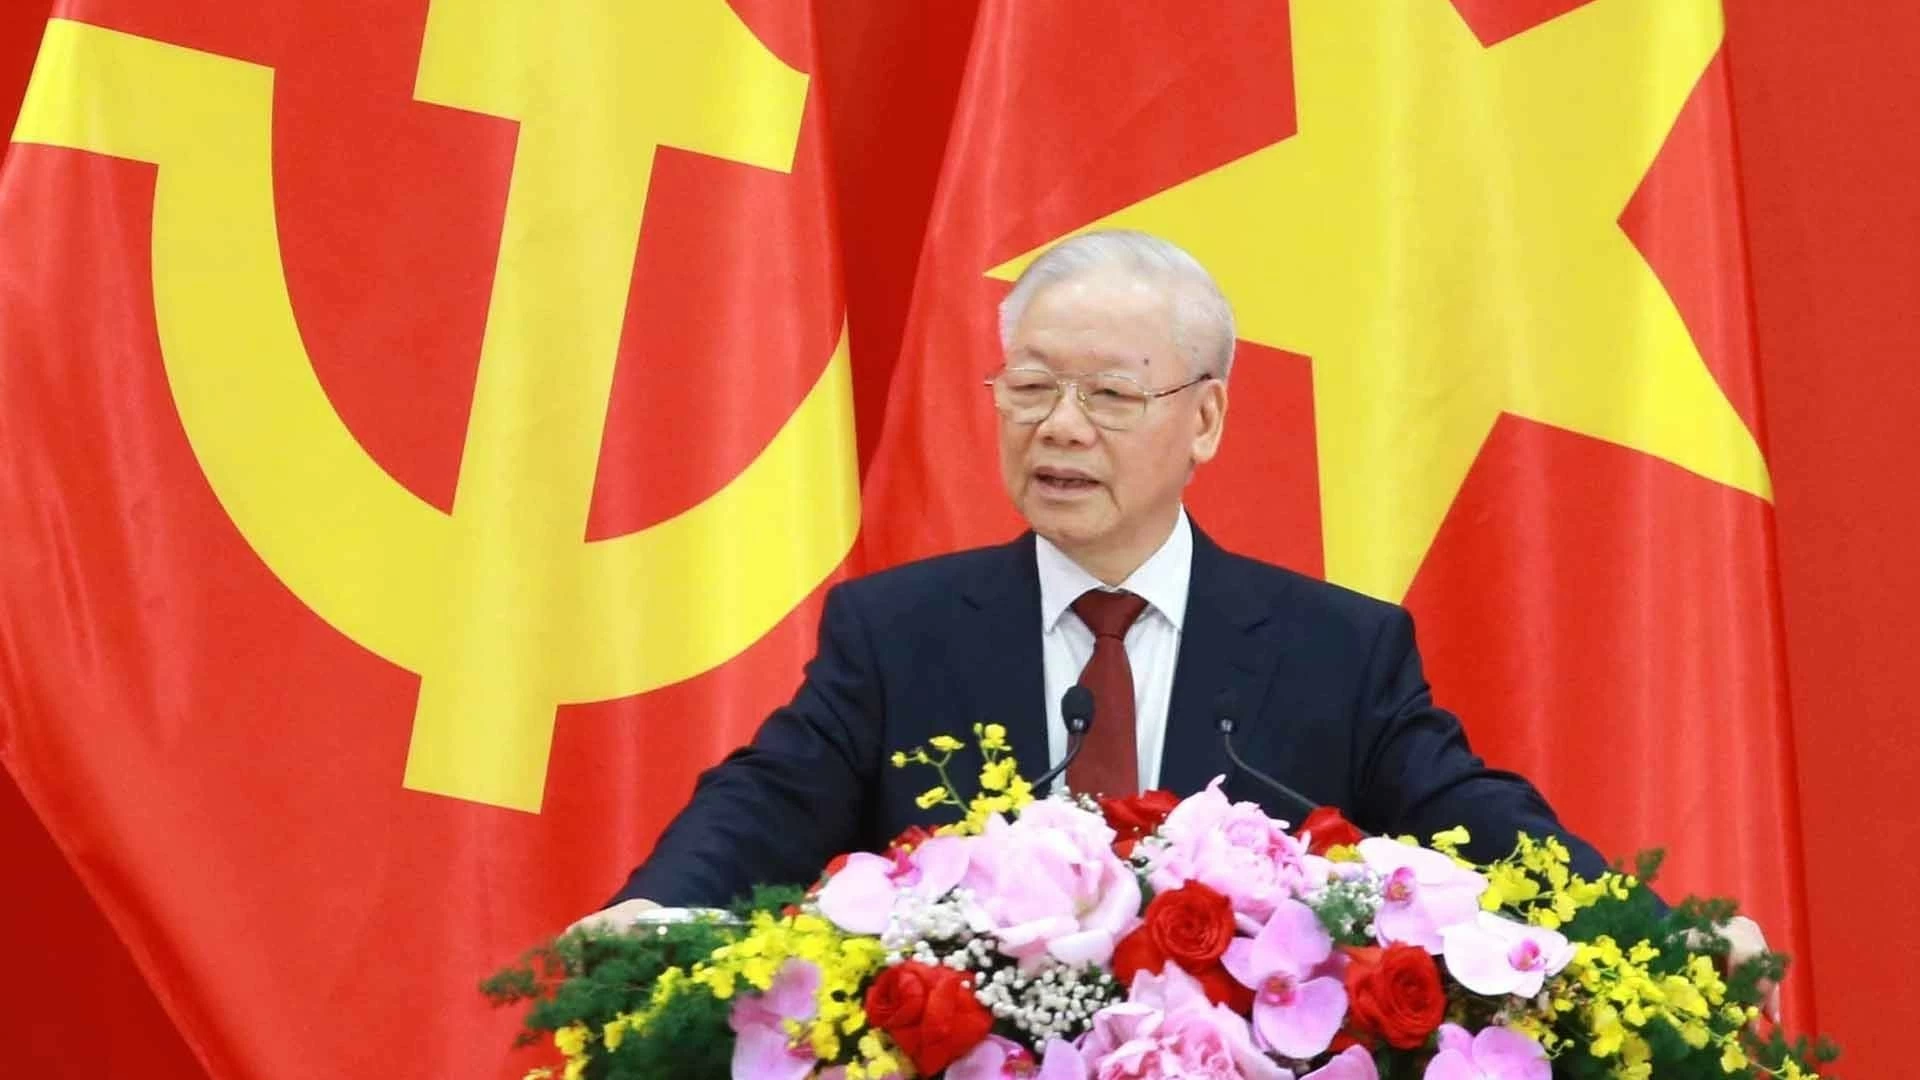 Tổng Bí thư Nguyễn Phú Trọng đã để lại những dấu ấn sâu sắc cả về lý luận và thực tiễn của công tác đối ngoại